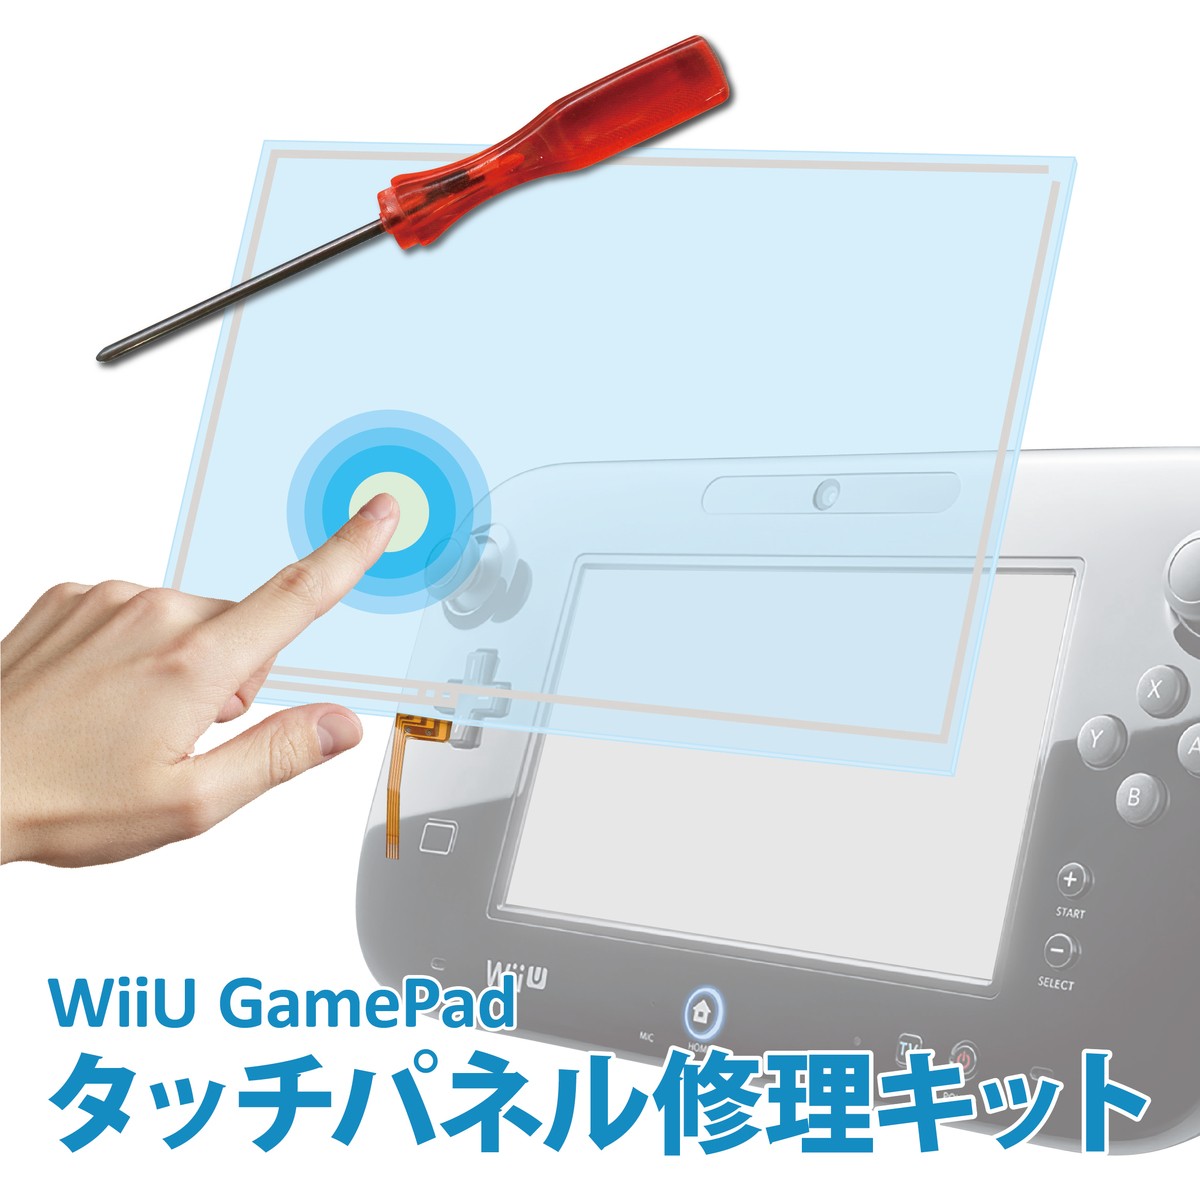 楽天市場 Wiiu Game Pad タッチパネル交換修理キット 専用ドライバー付属 製品保証付 C Wiiu タッチパネル2点 Apマーケット